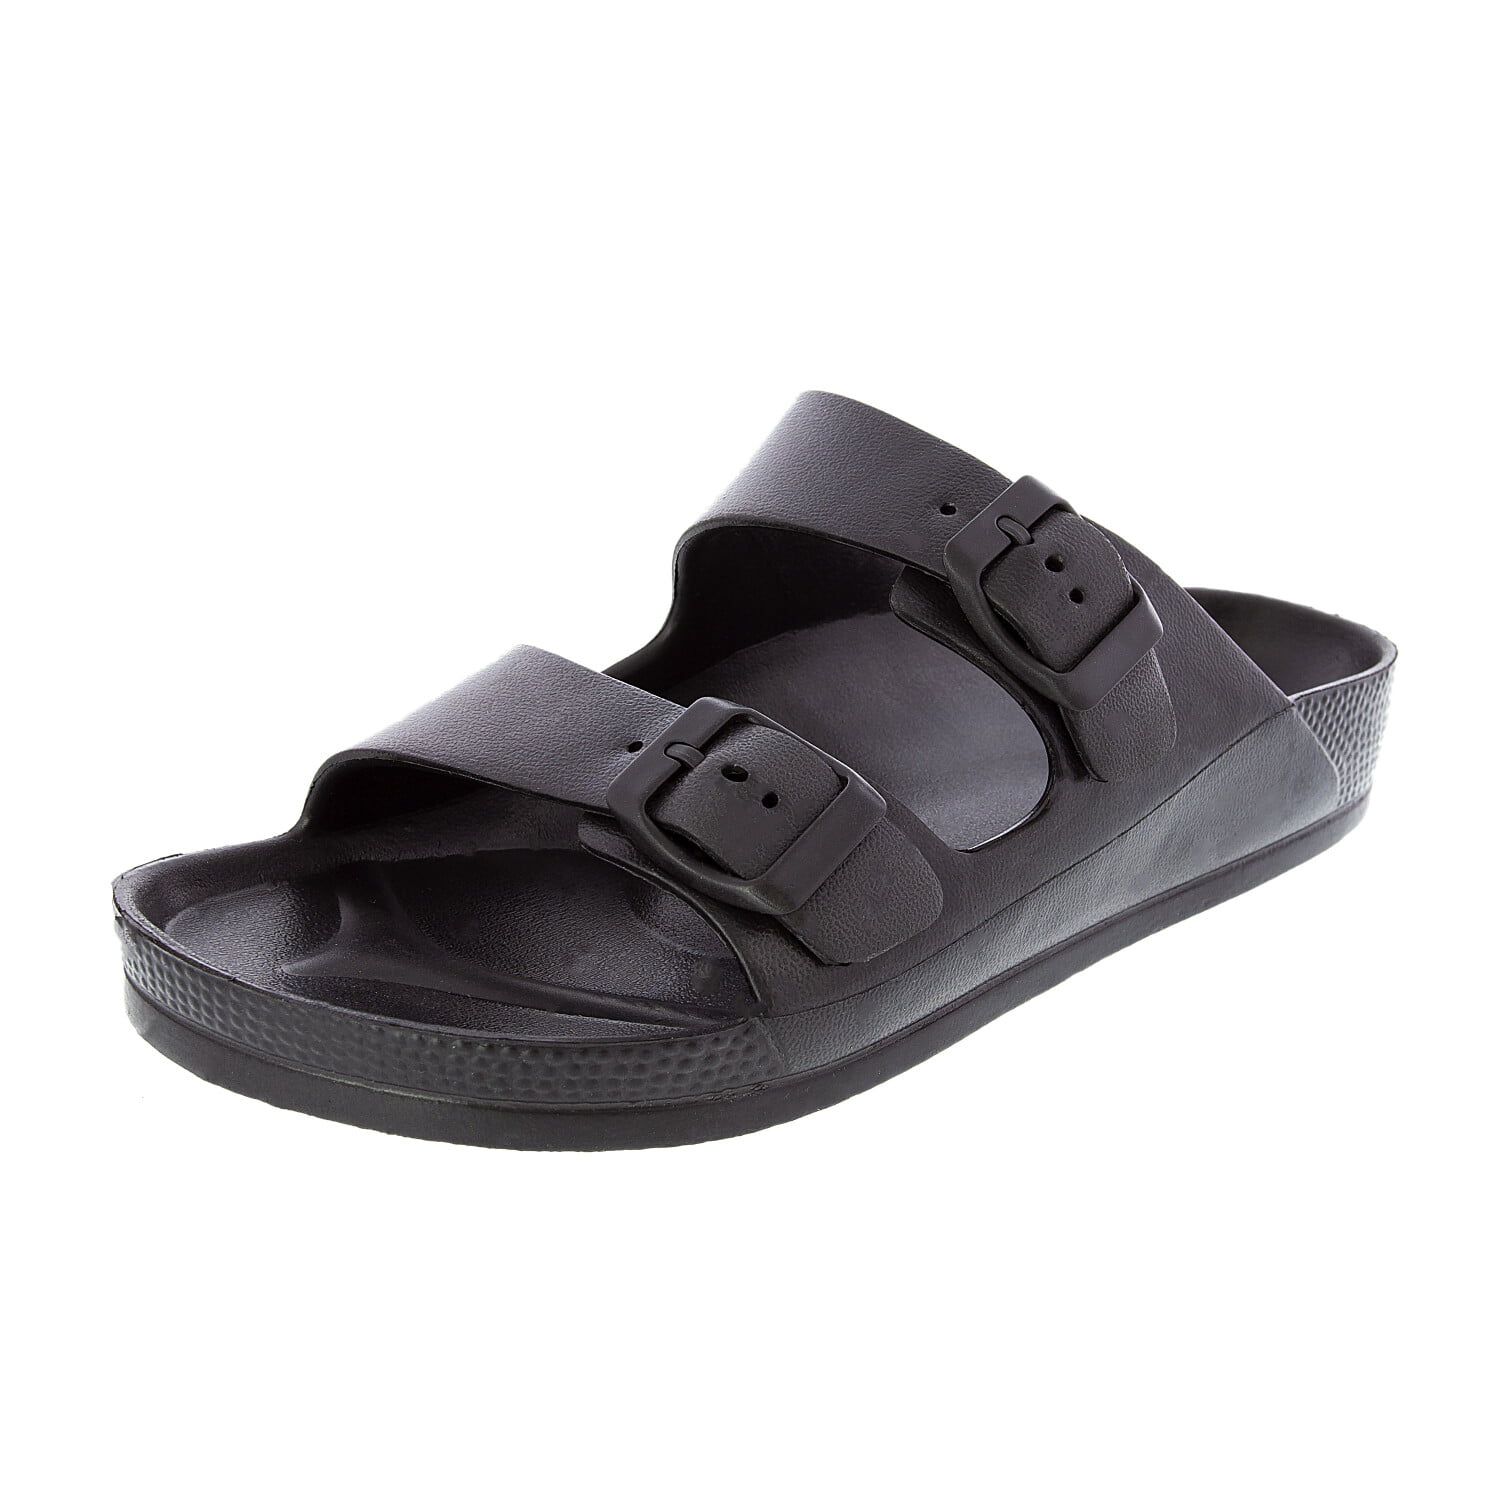 black waterproof sandals